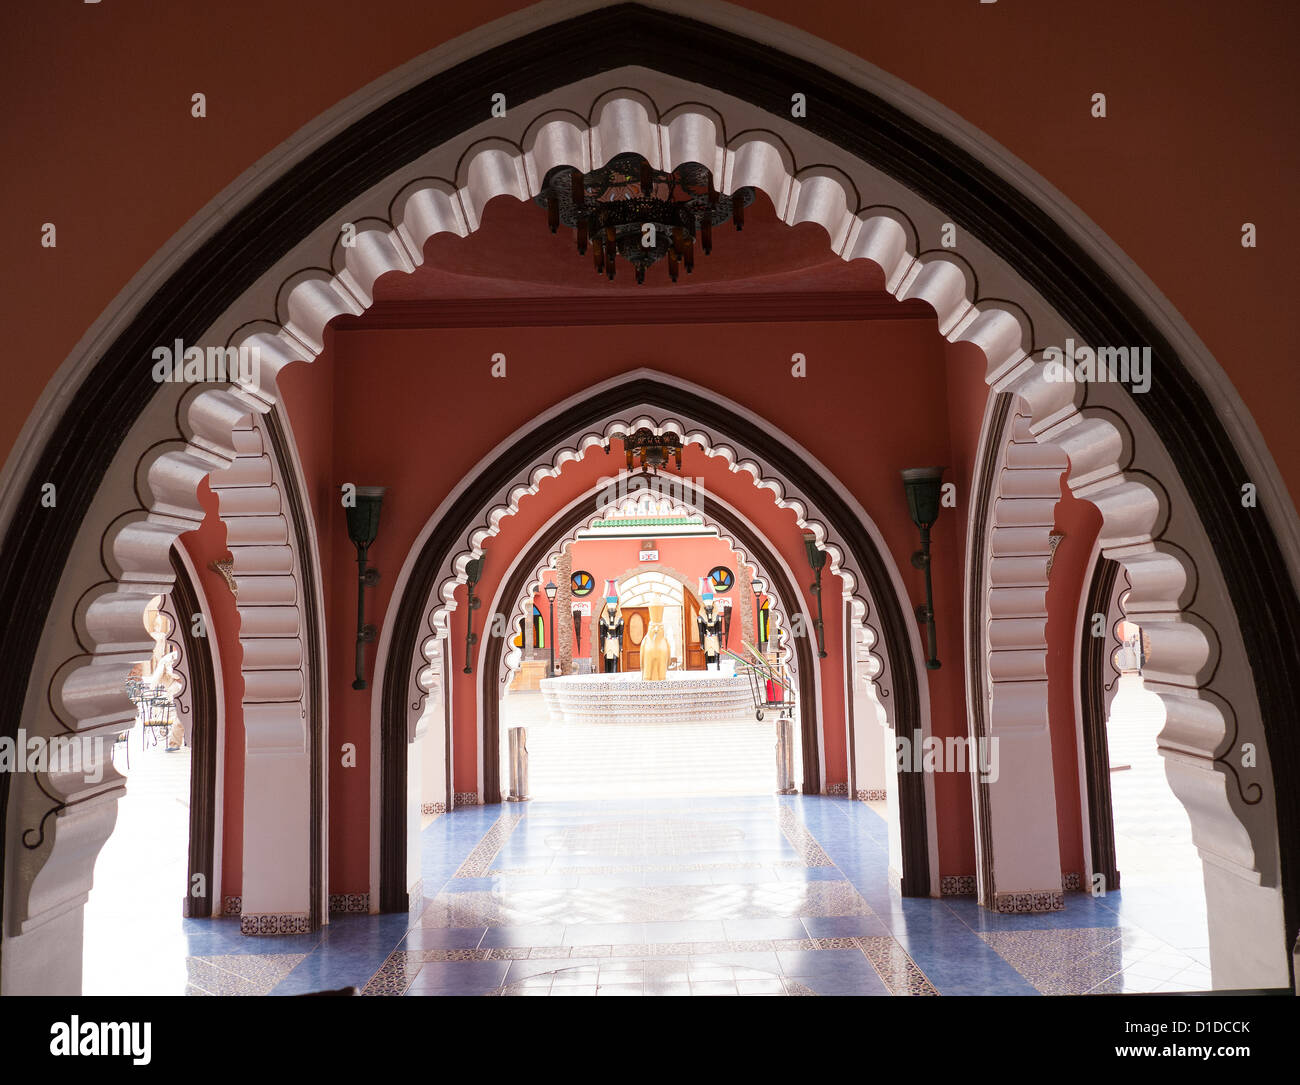 Arches décoratives à l'intérieur de Fantasia, un centre de divertissement à Charm El Cheikh, Egypte Banque D'Images